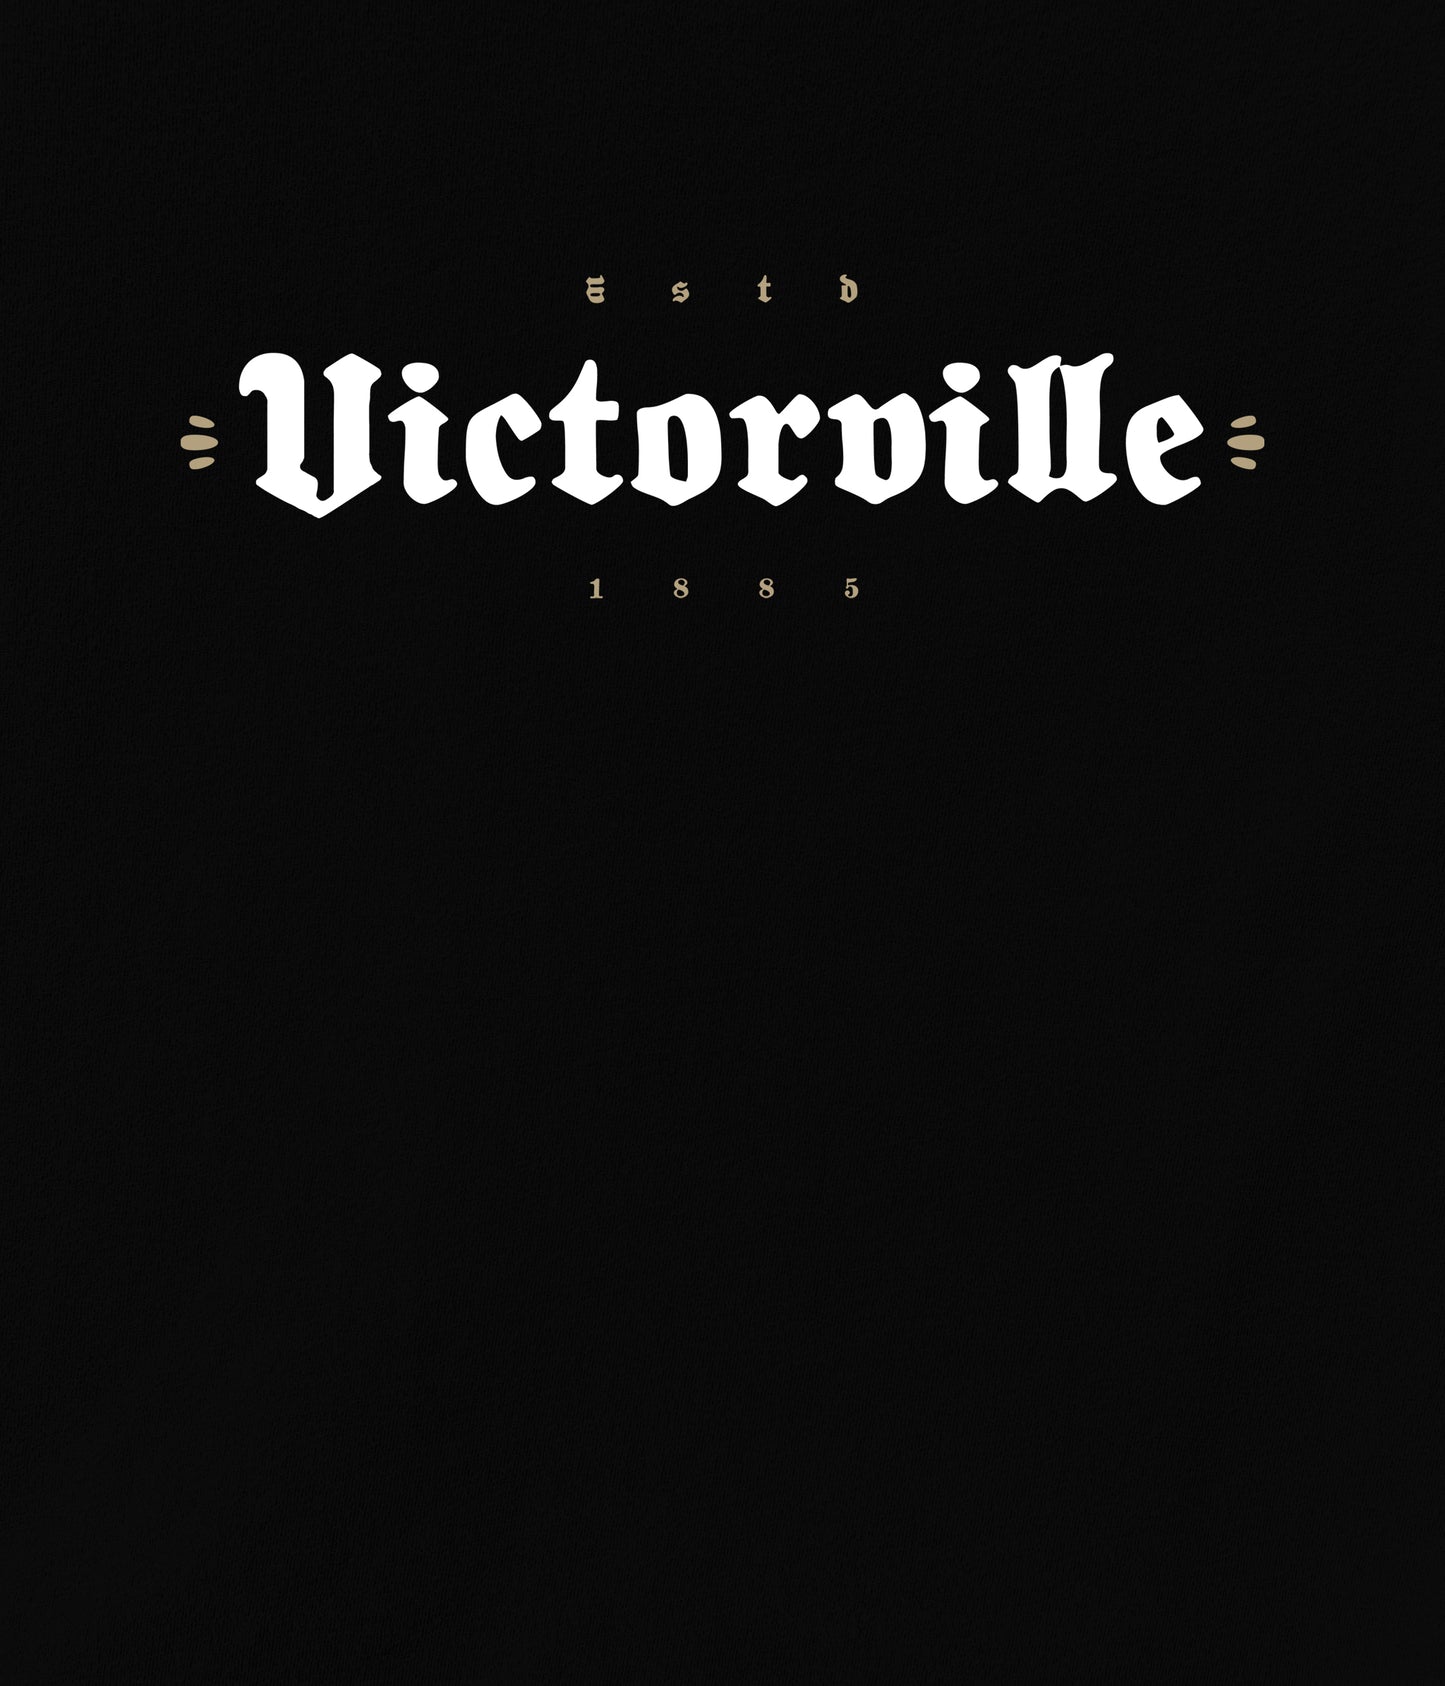 Victorville Established Hoody